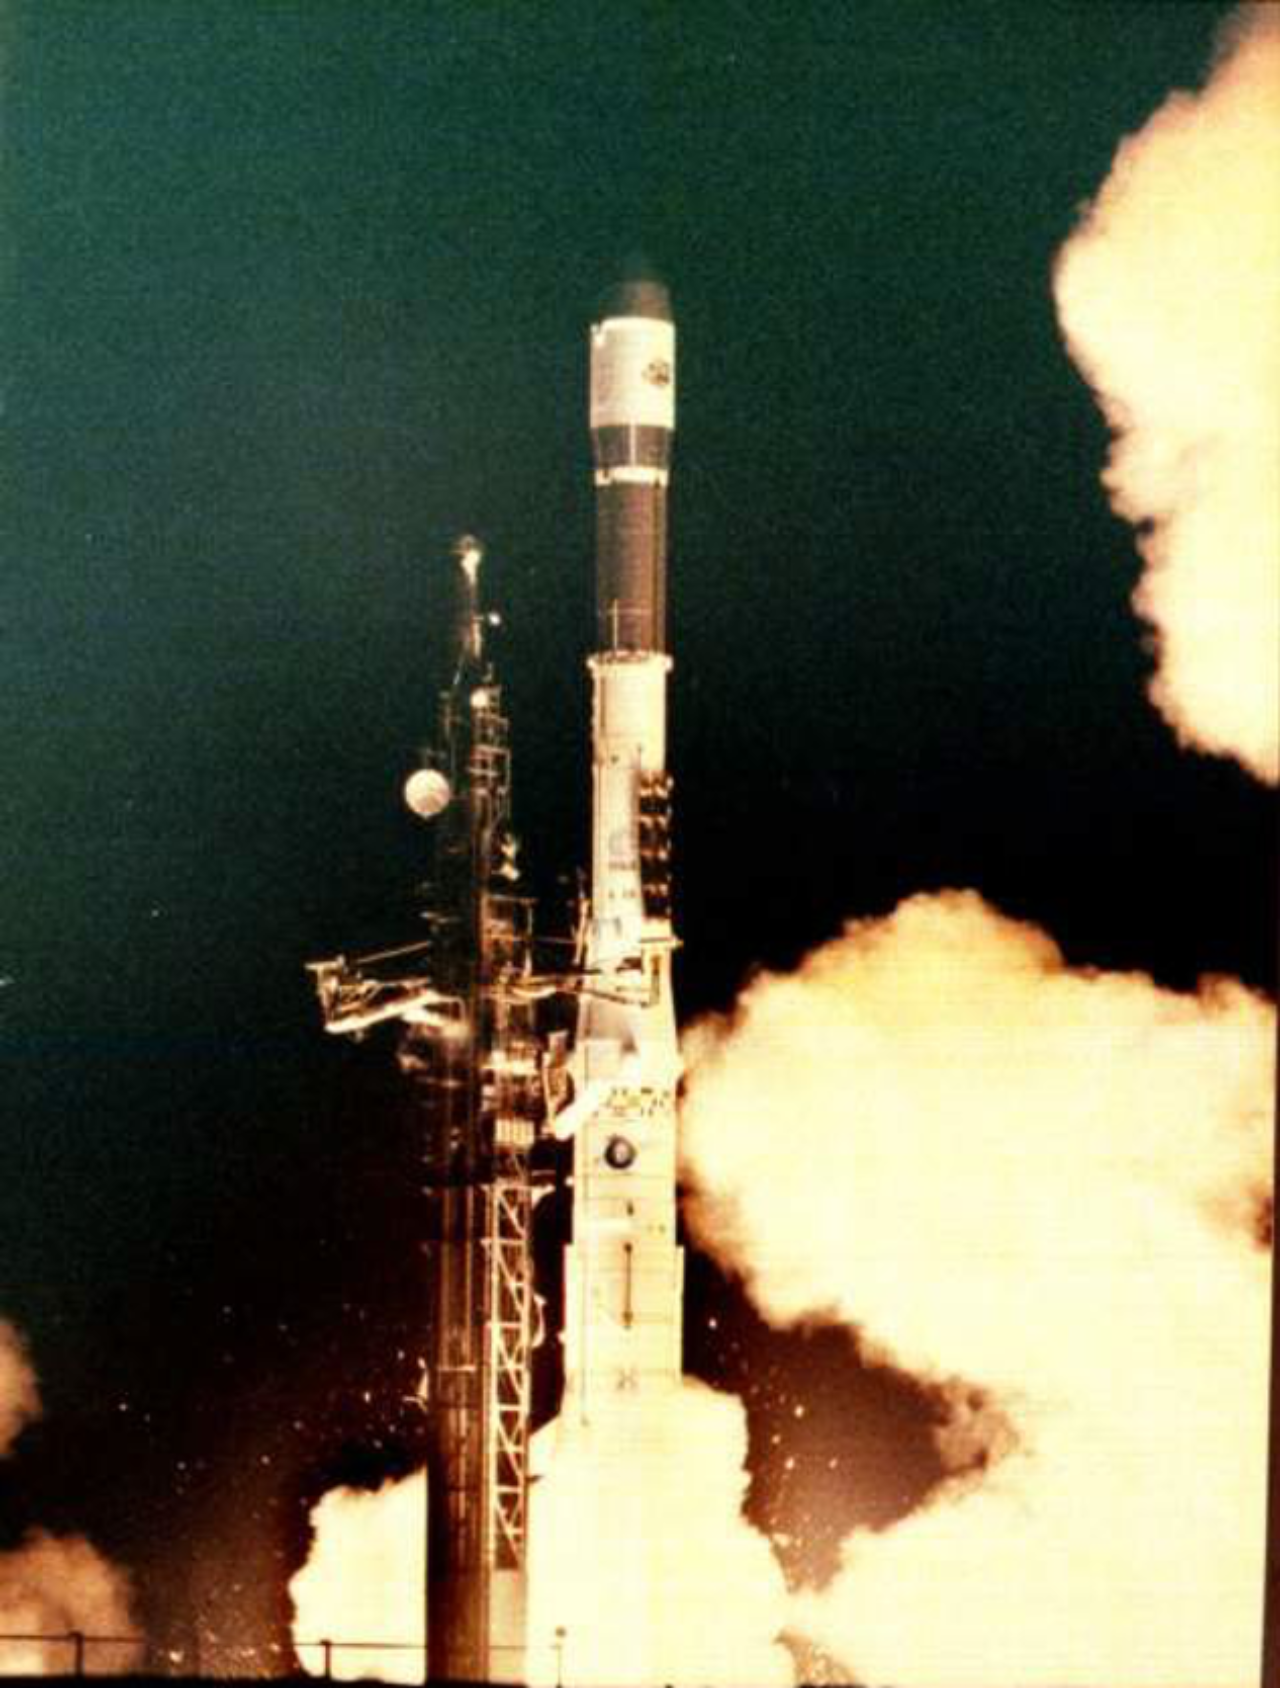 Après 6 vols dont 5 succès, Ariane 2 tire sa révérence. Nous sommes le 2 avril 1989 à 02h28 (UT) sur l’aire de lancement ELA 1 à Kourou et Ariane 2 emporte avec elle le satellite de communication suédois Tele-X en direction de l’orbite GTO.